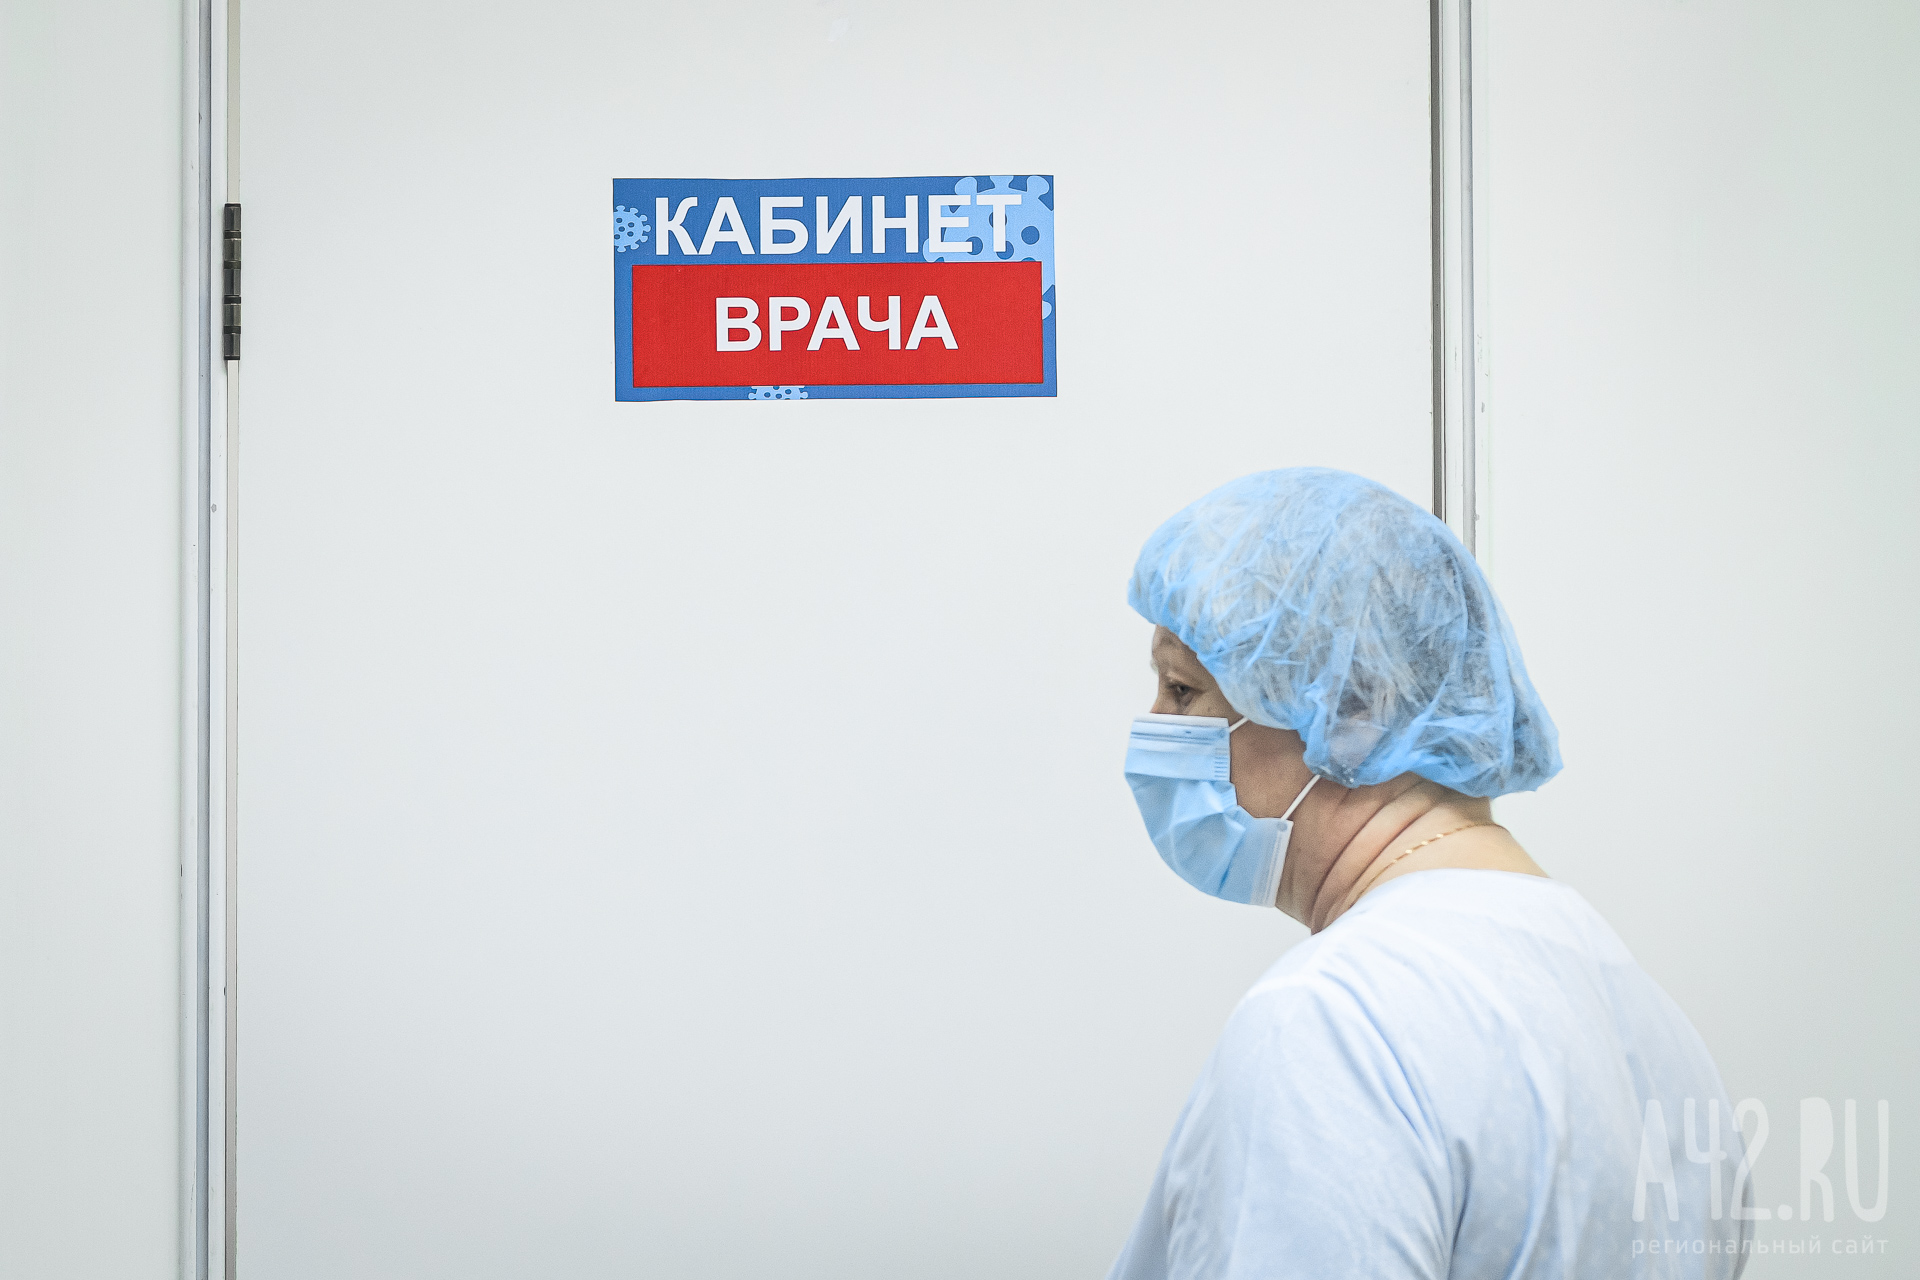 Беременная жительница Кузбасса пожаловалась, что врач не принял её в поликлинике и накричал